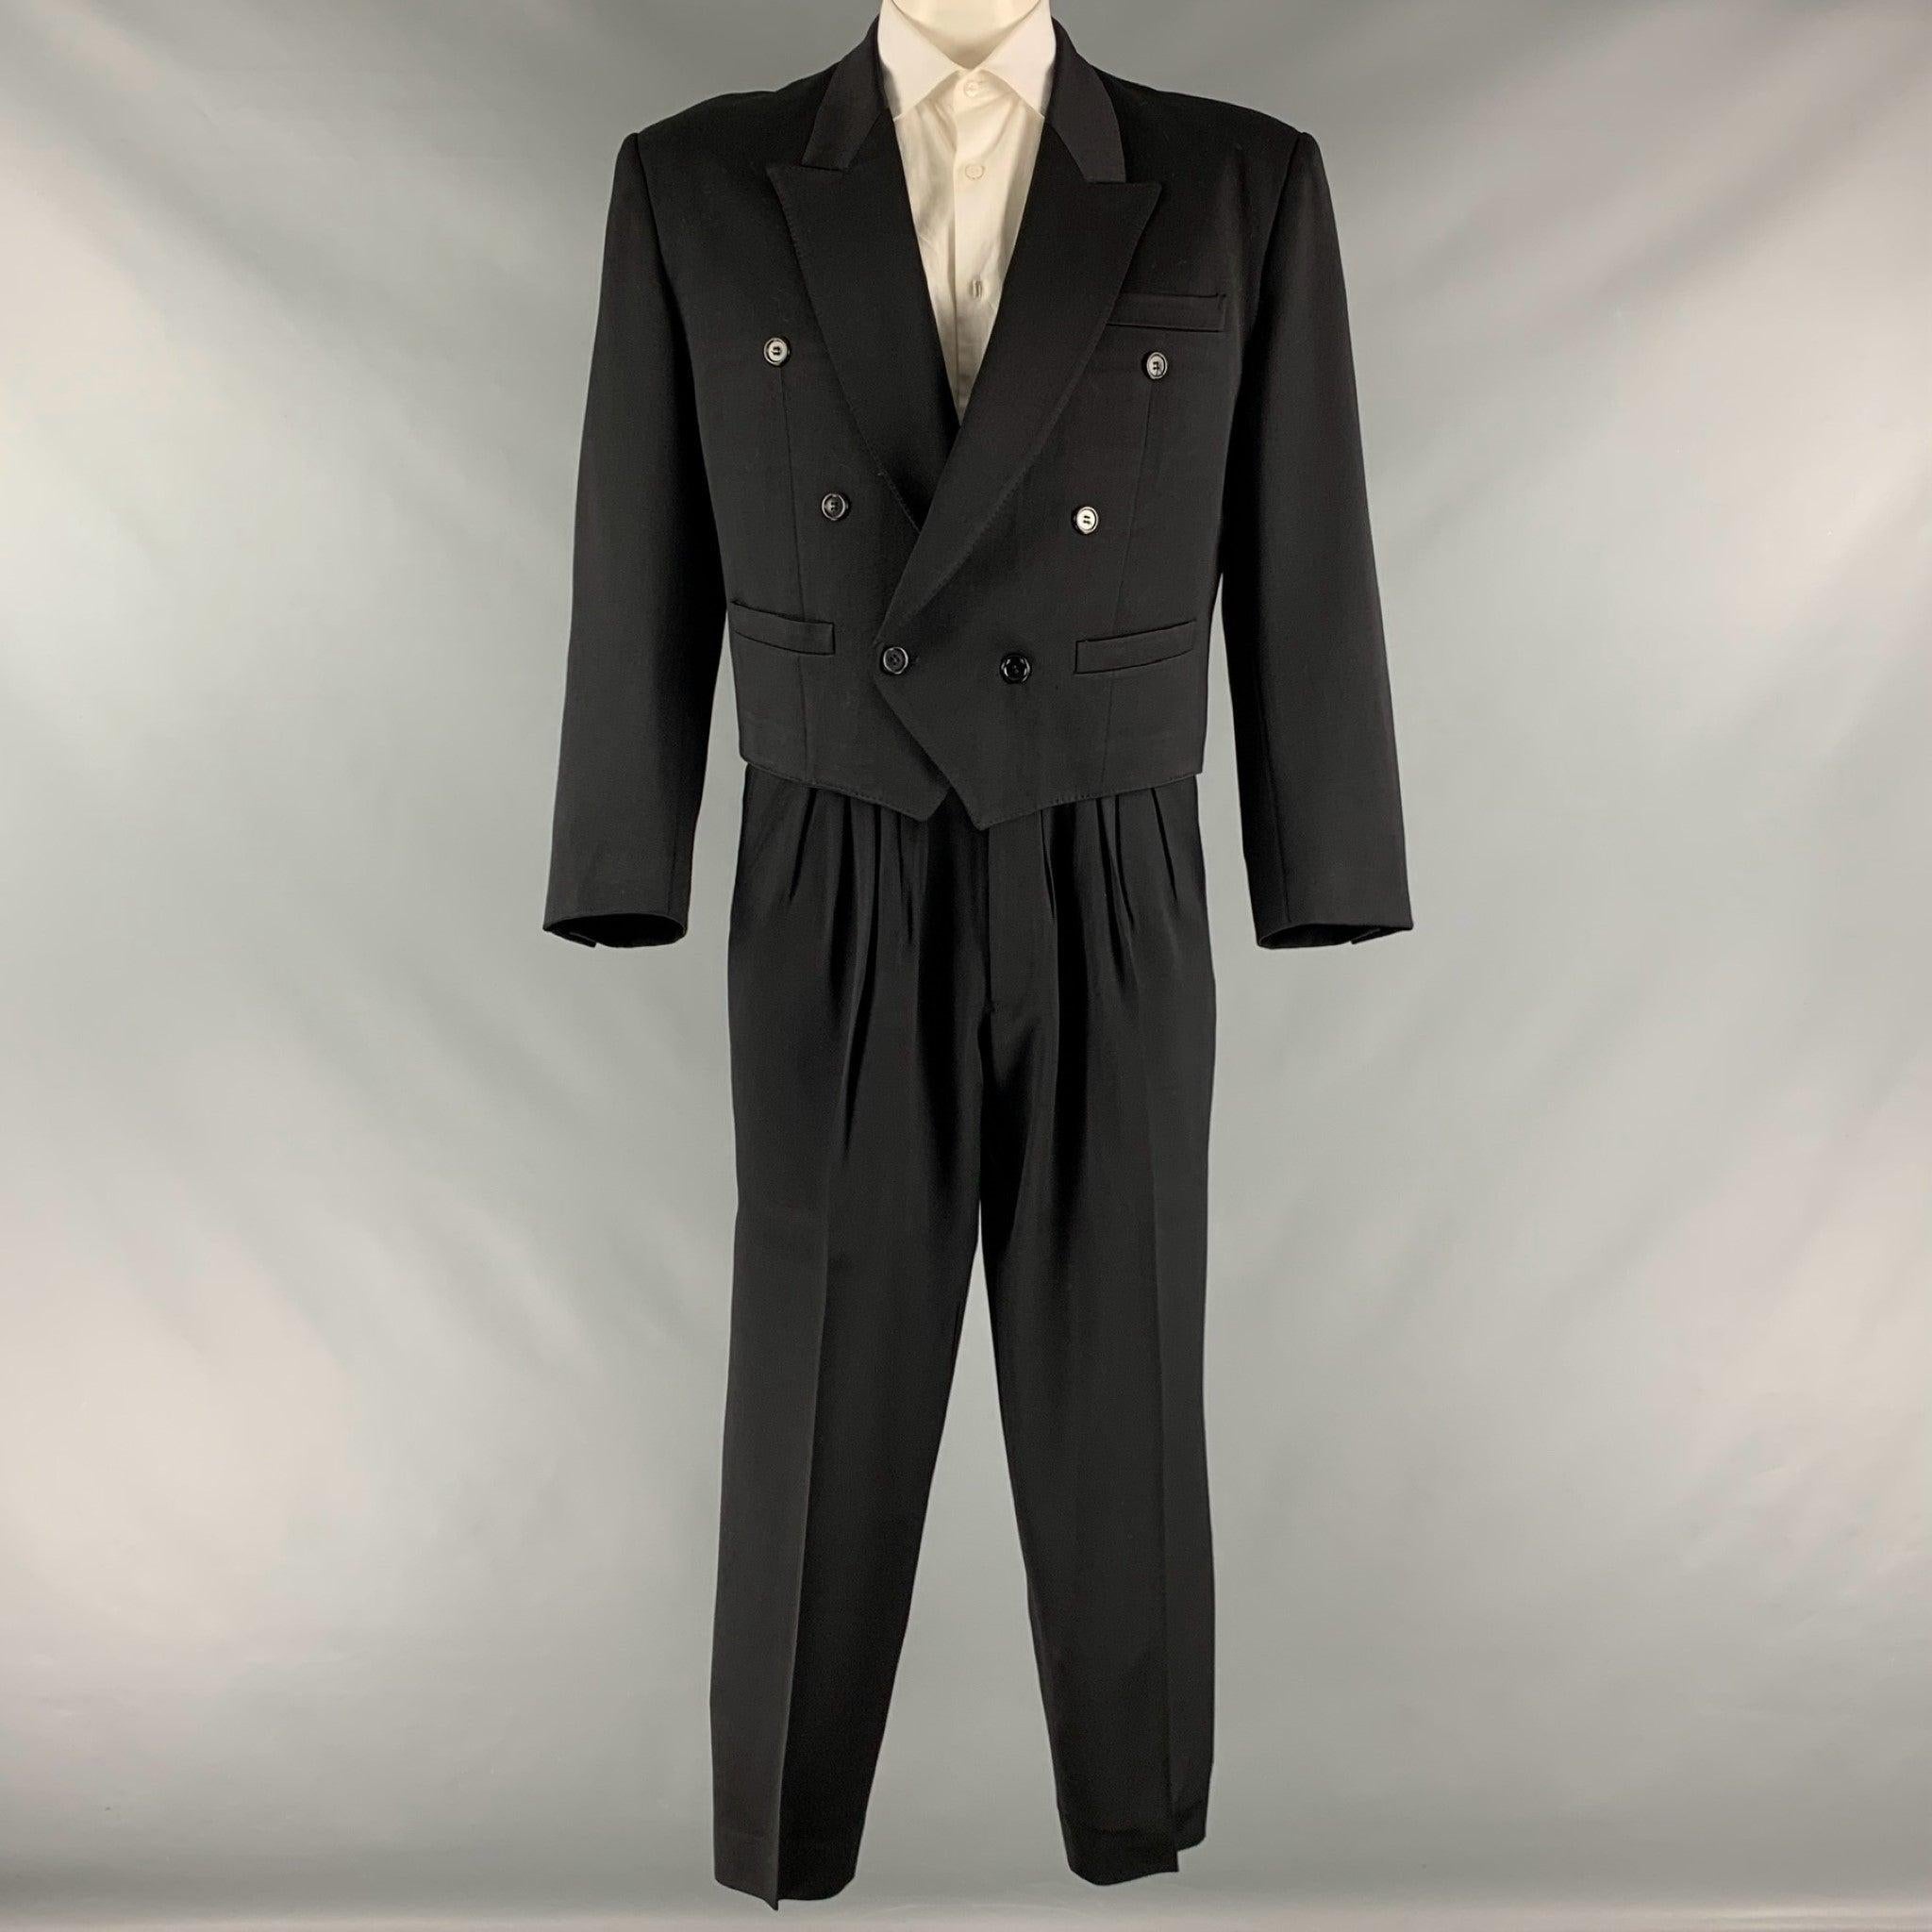 Le costume KENZO est en laine noire avec une doublure complète et comprend un manteau de sport cropped à double boutonnage avec un revers en pointe et un pantalon à plis sur le devant assorti.Très bon état d'occasion.
Signes d'usure modérés.